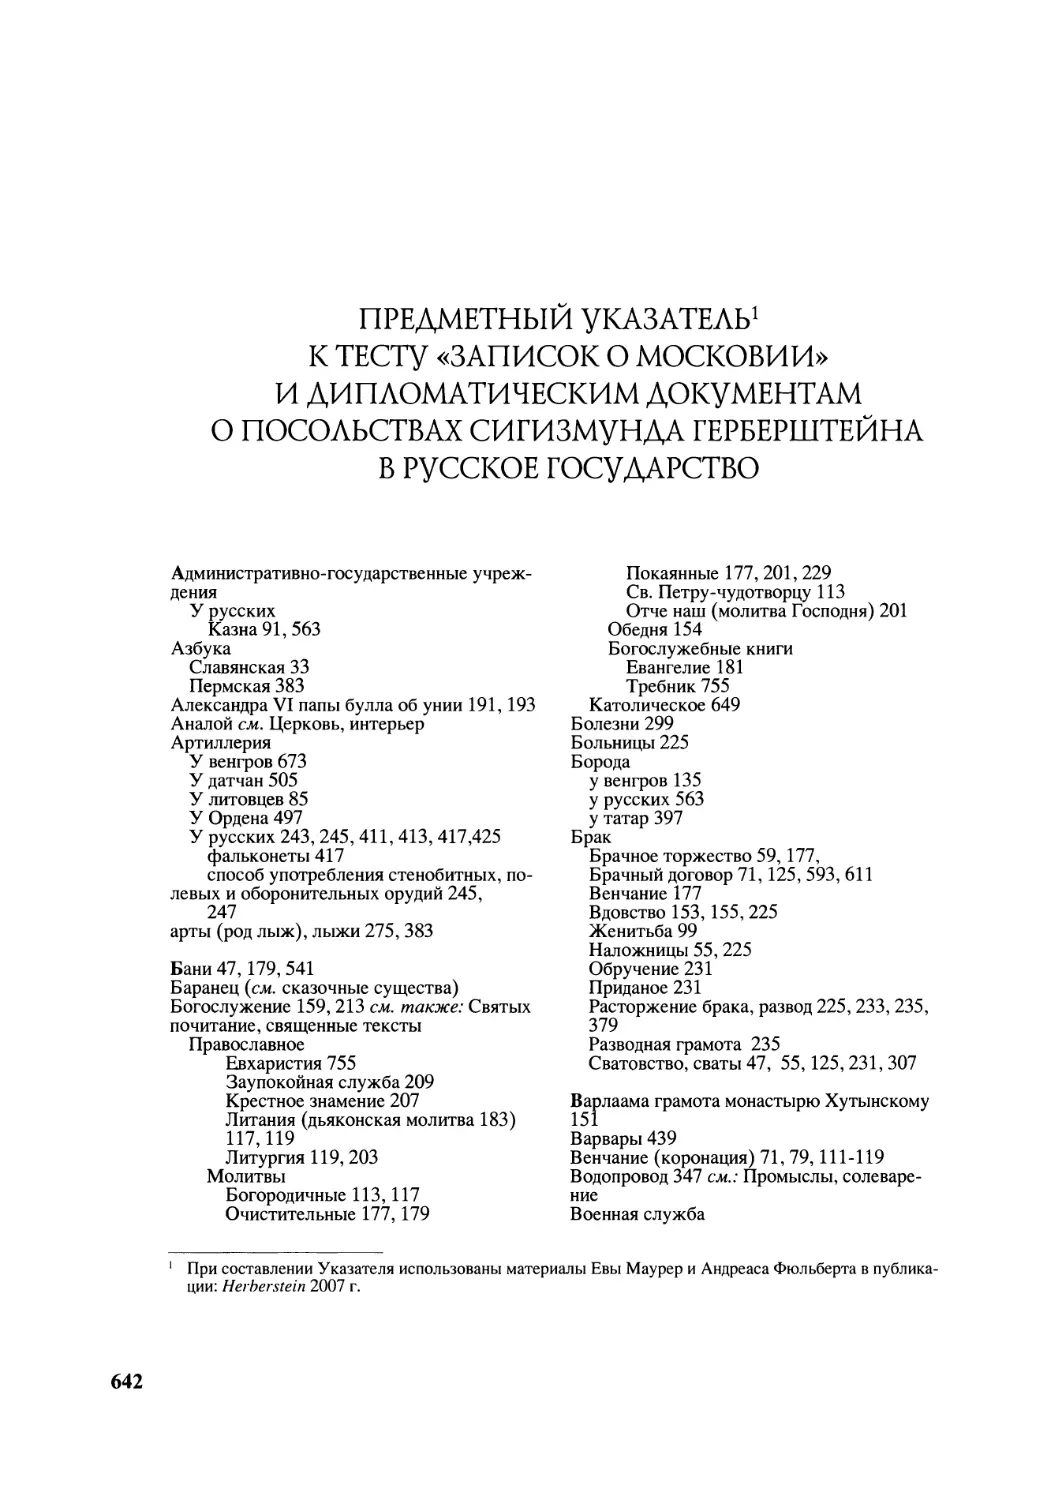 Предметный указатель к тексту «Записок о Московии» и дипломатическим документам